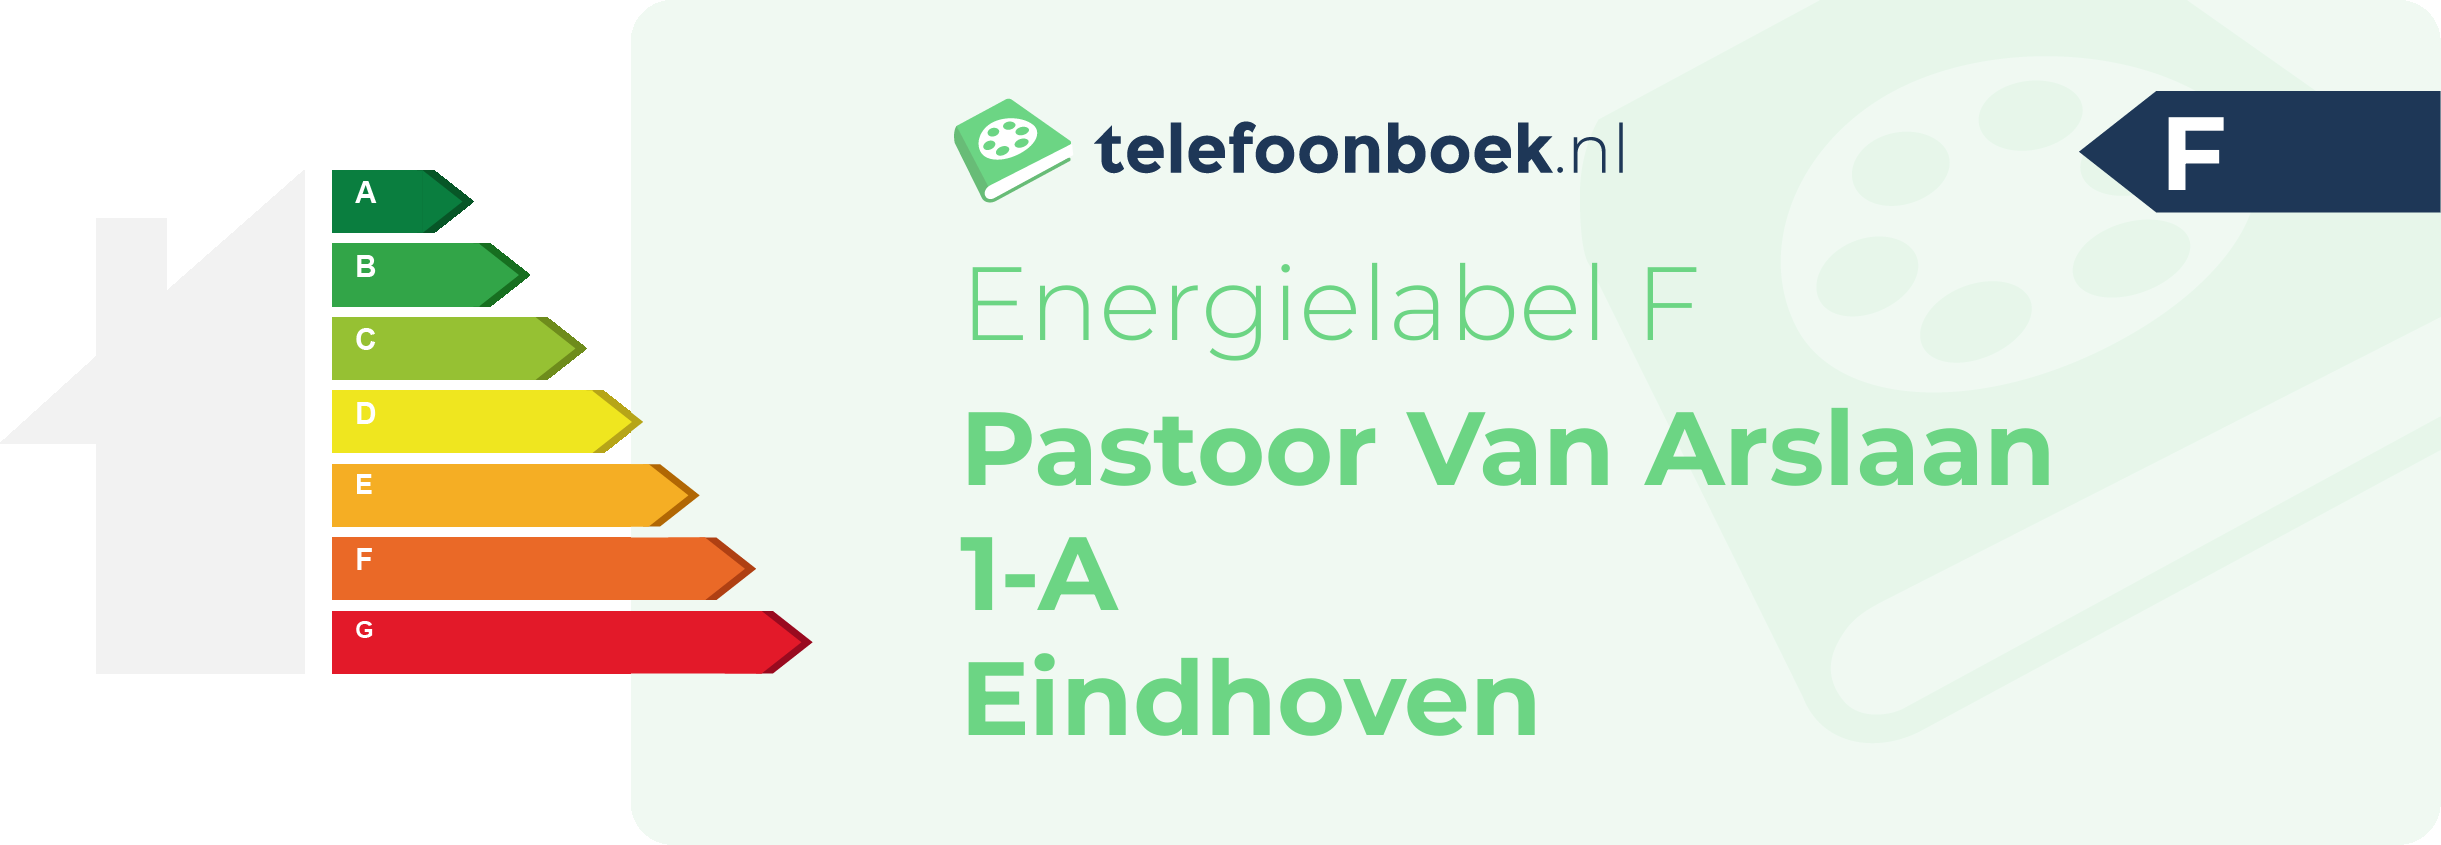 Energielabel Pastoor Van Arslaan 1-A Eindhoven